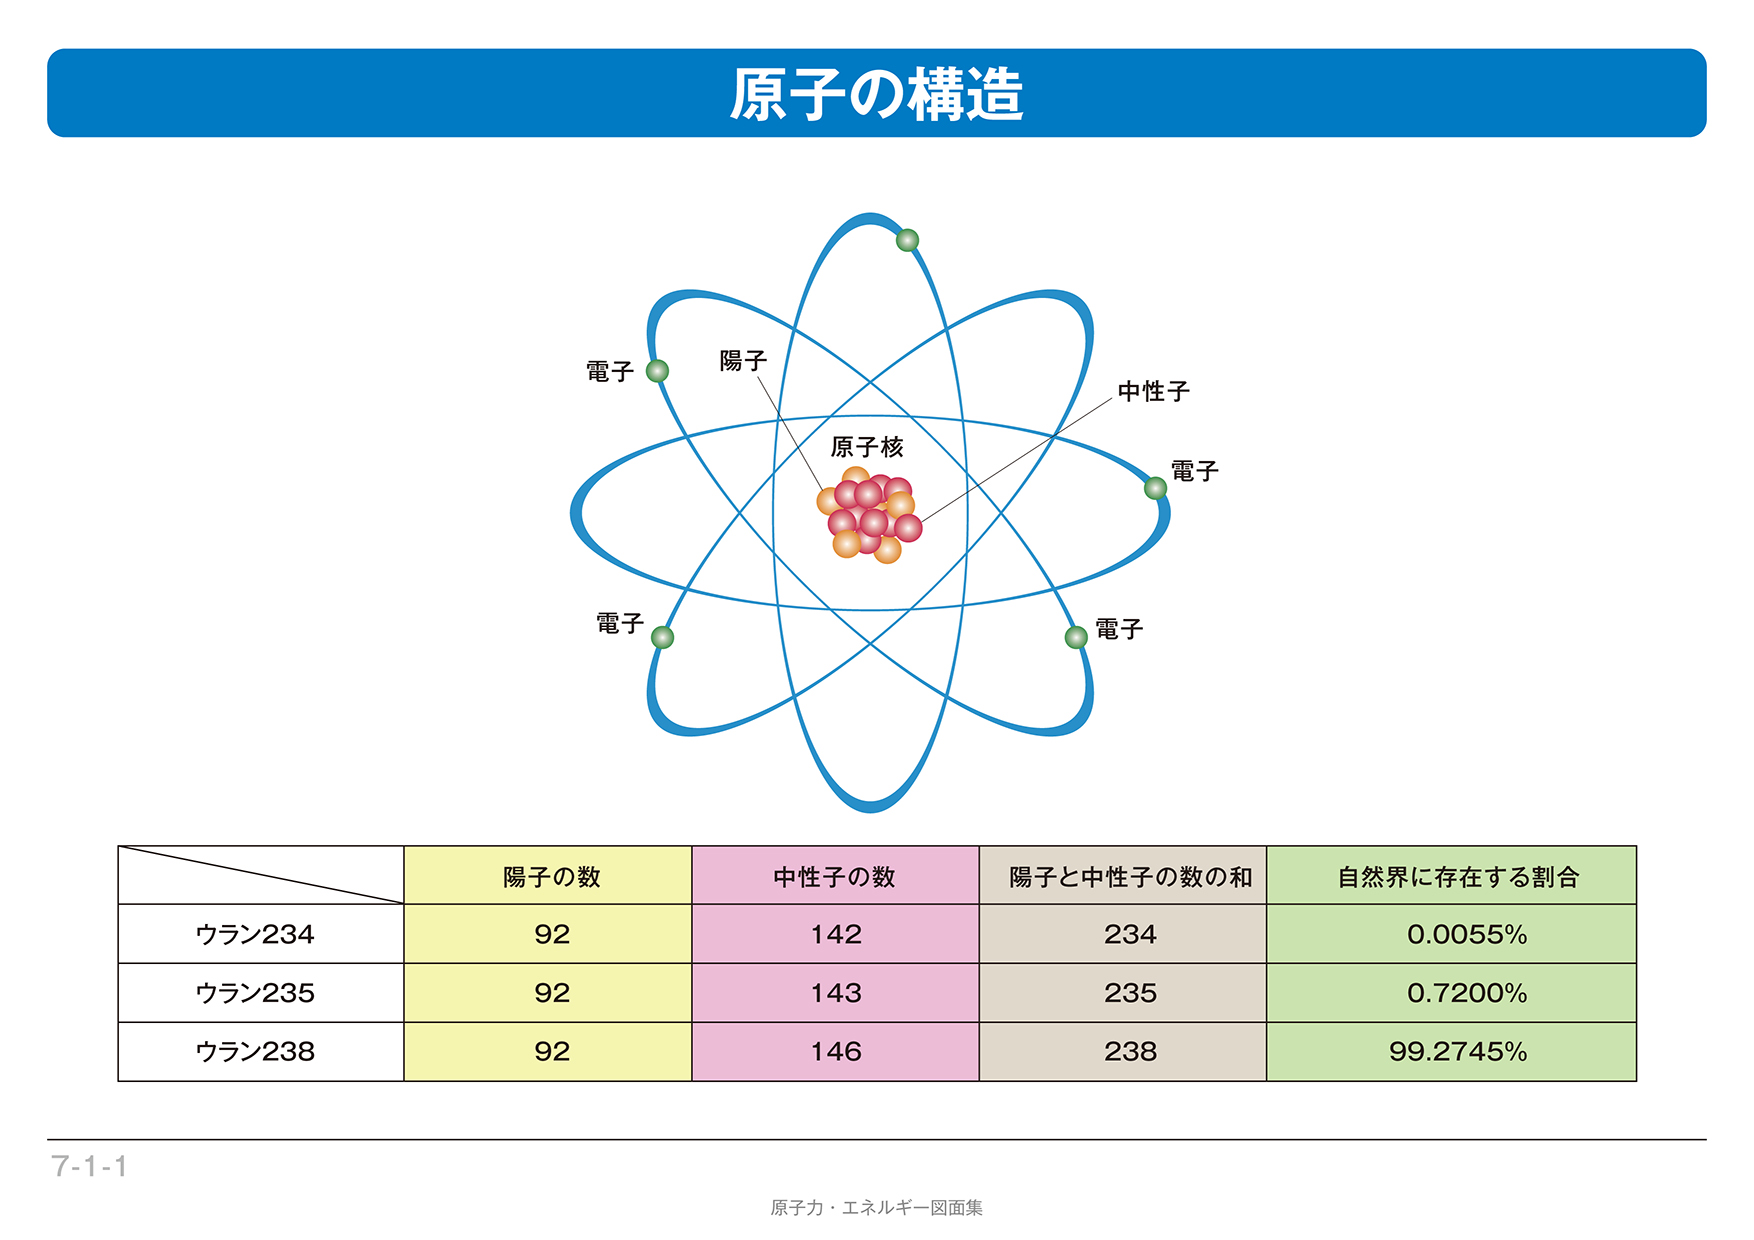 出典）日本原子力文化財団「原子力・エネルギー図面集」